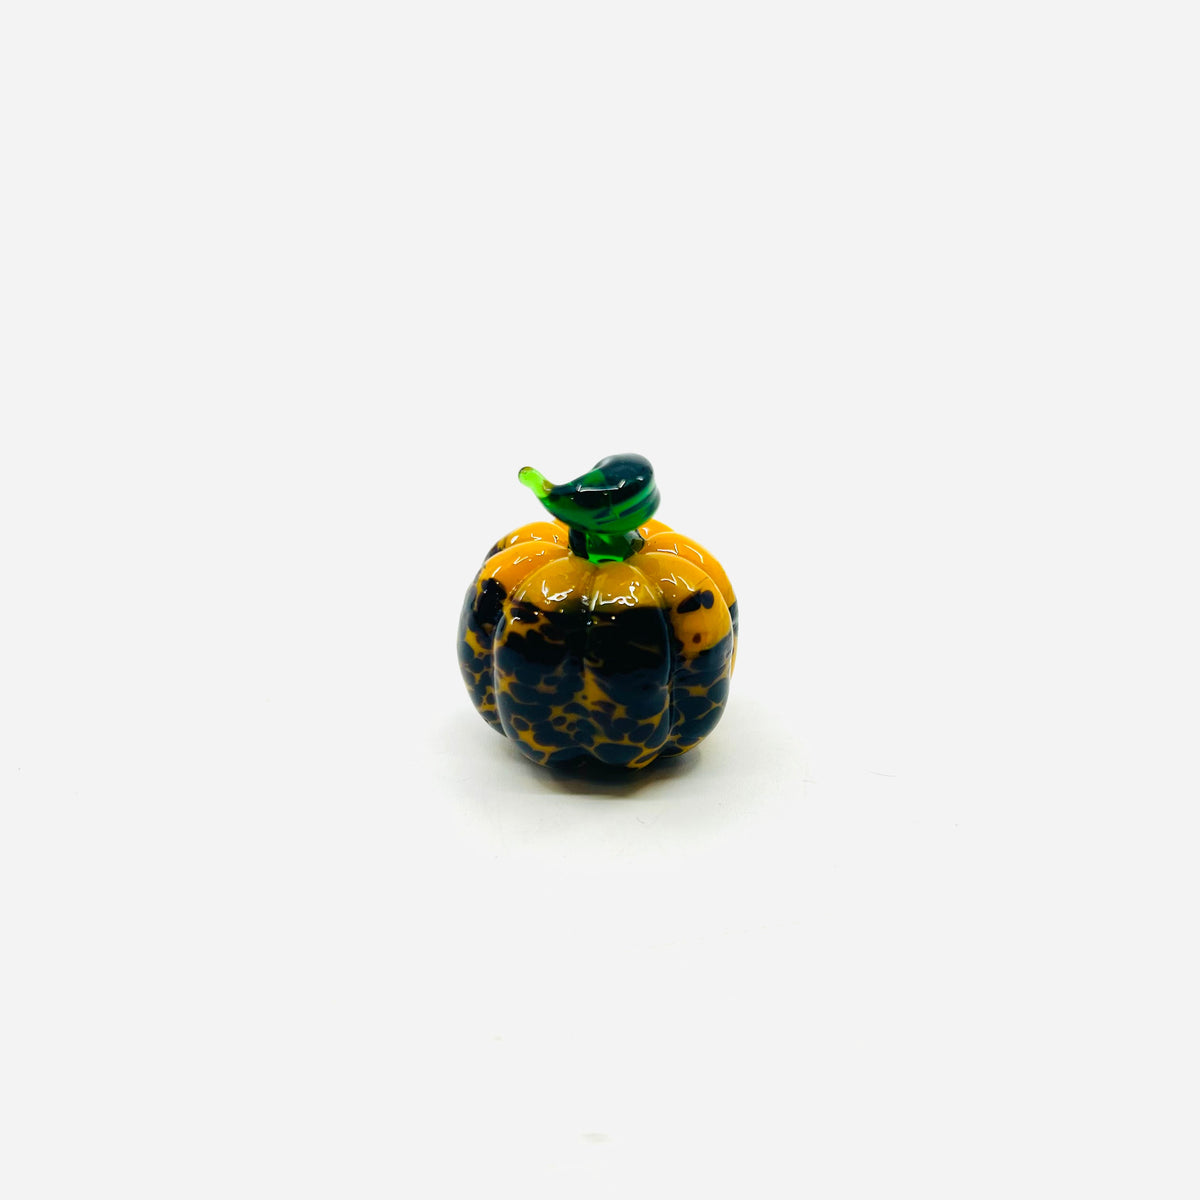 Halloweenie Statement Pumpkin Spotted Jack 116